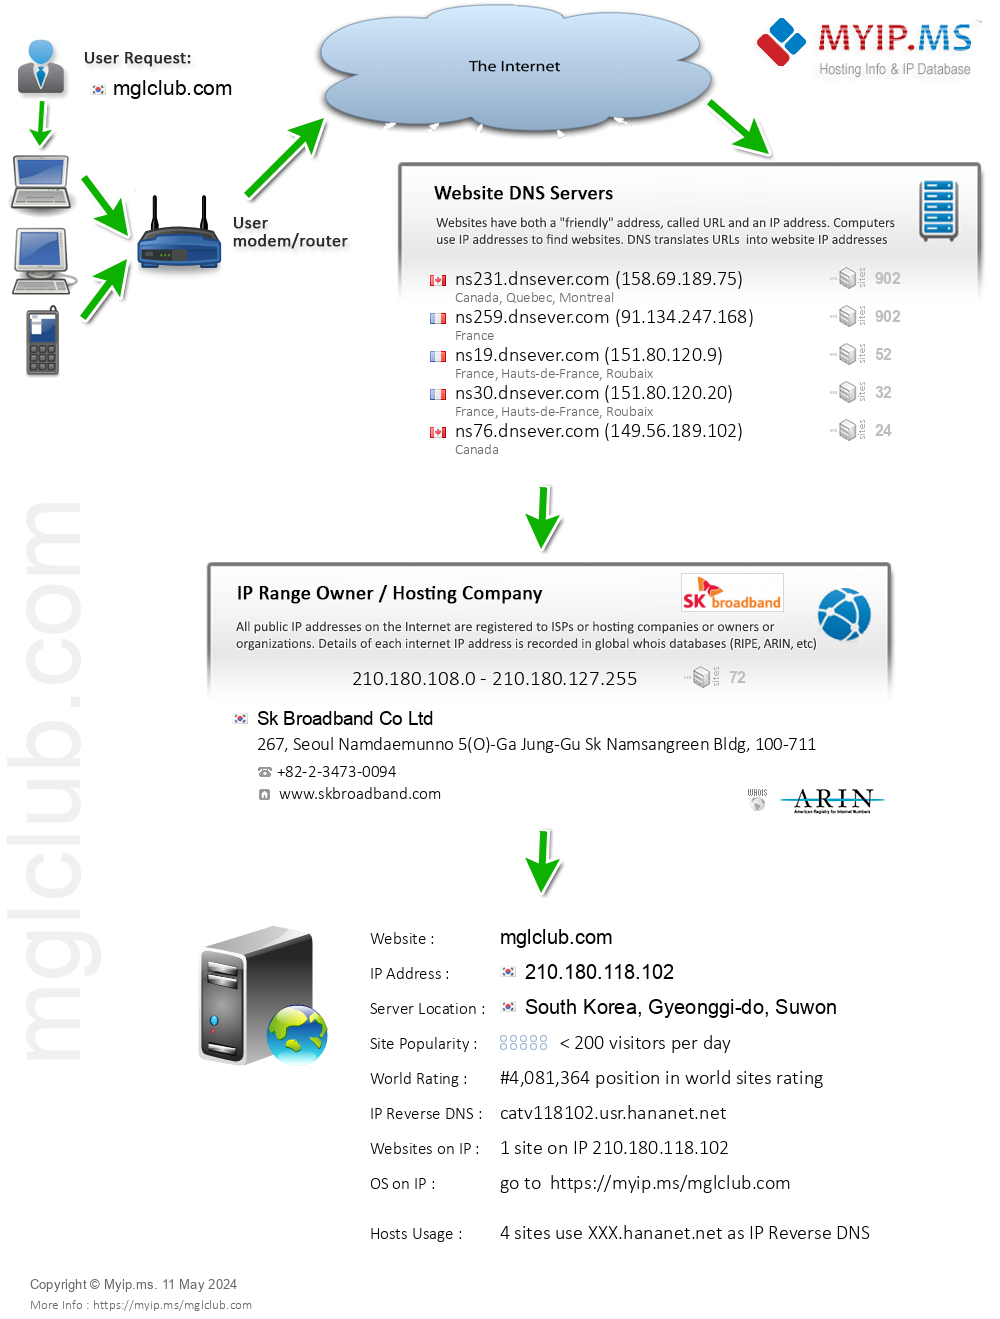 Mglclub.com - Website Hosting Visual IP Diagram